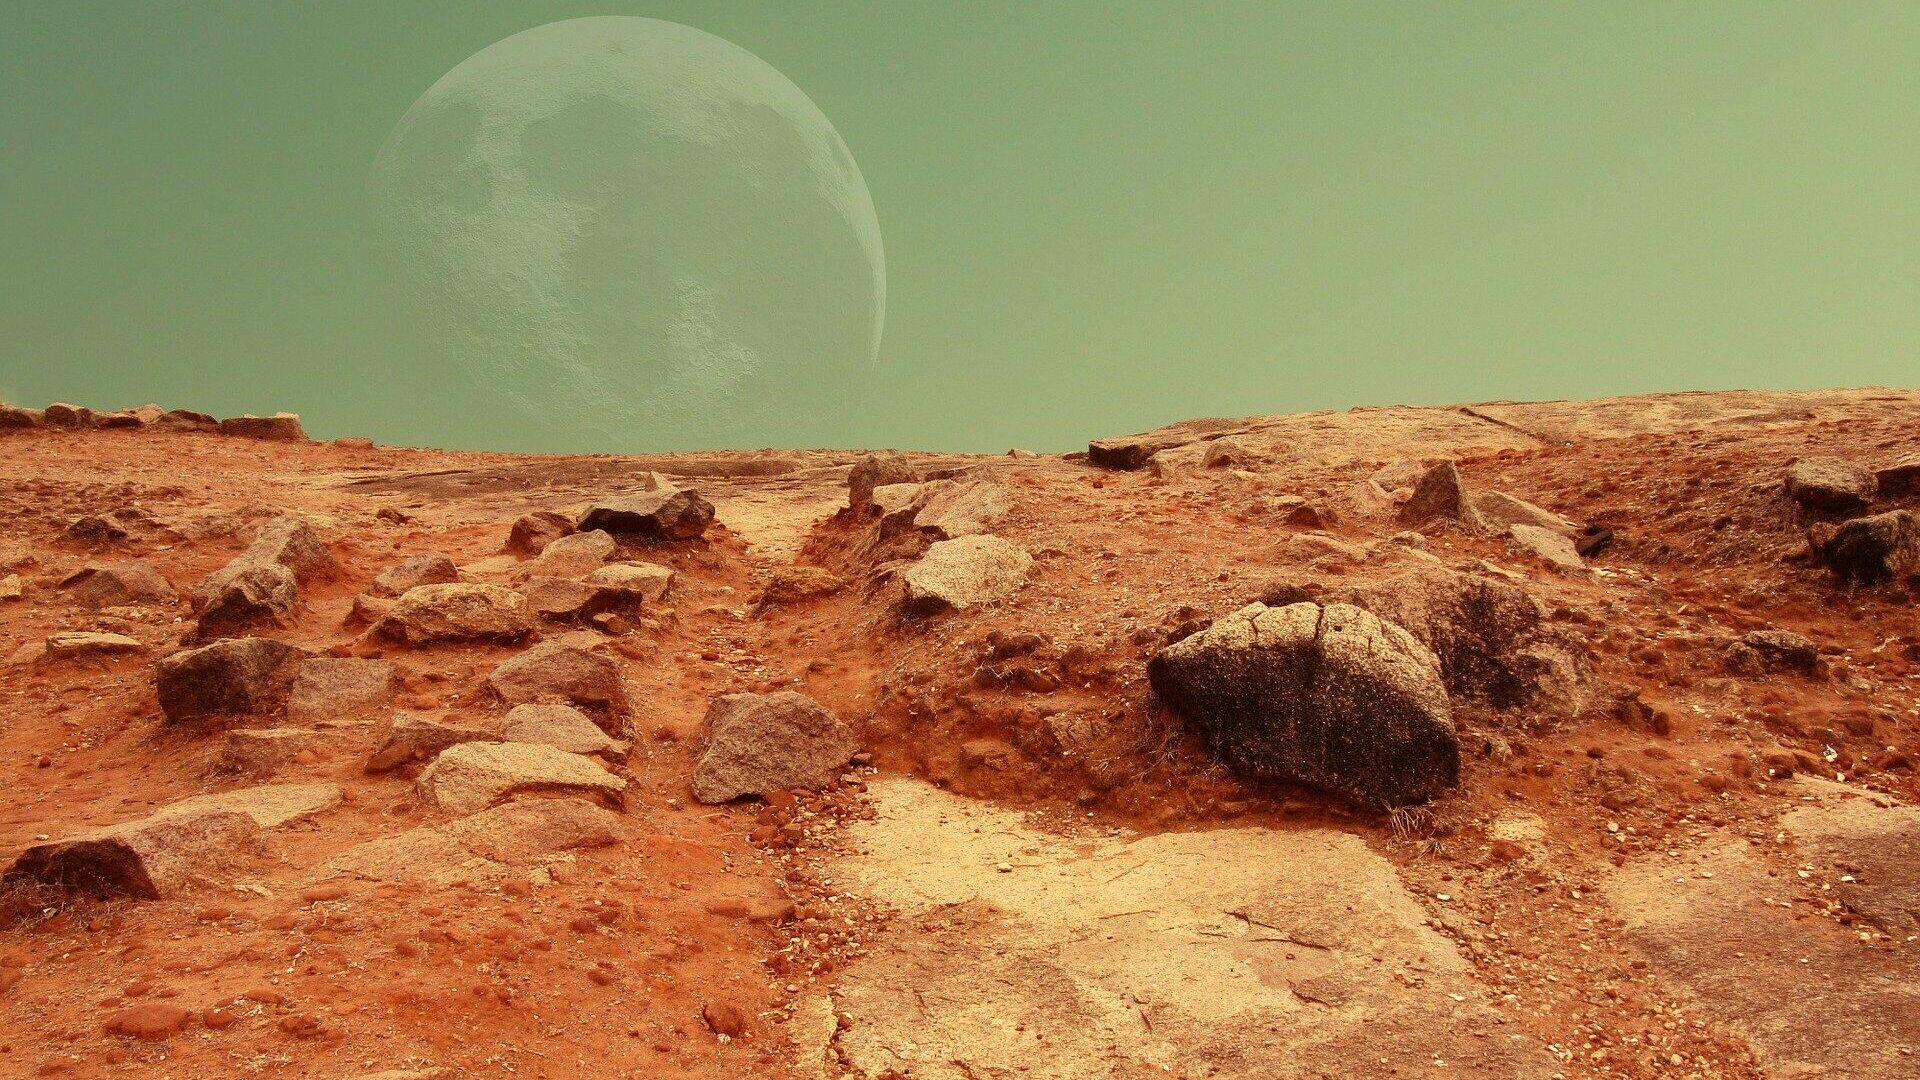 Снимки планеты Марс с марсохода